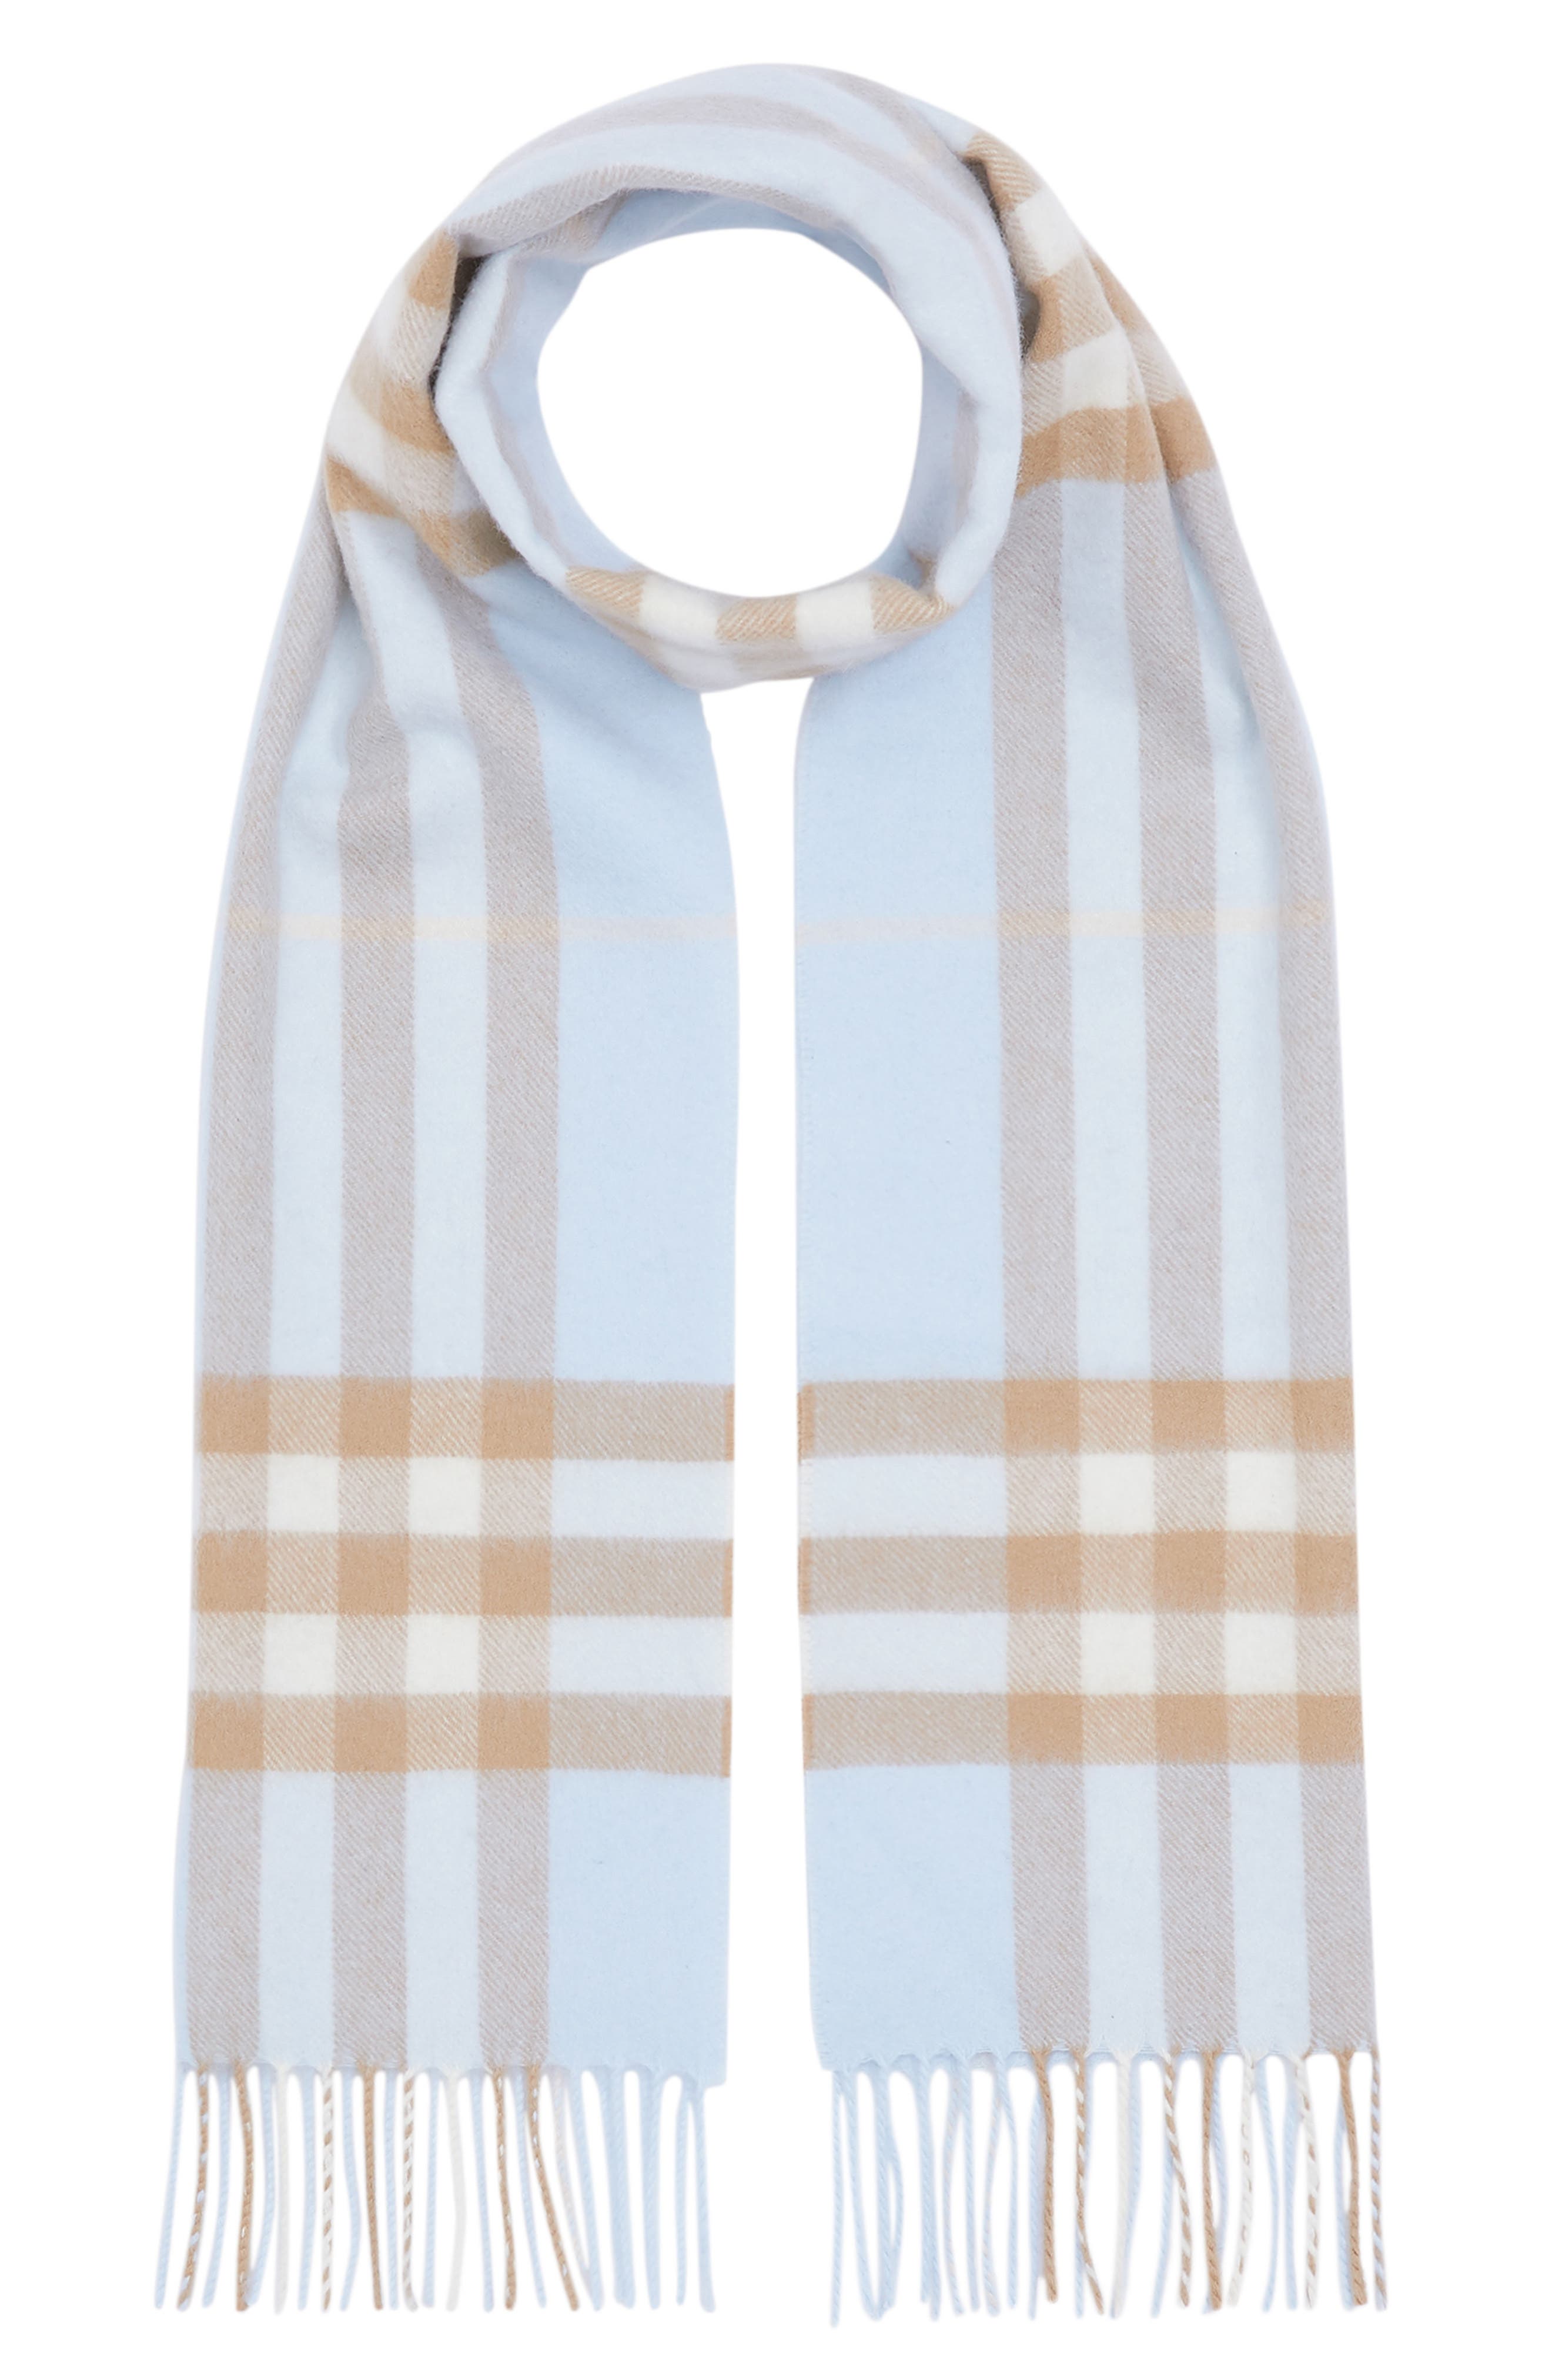 burberry blue scarf cashmere